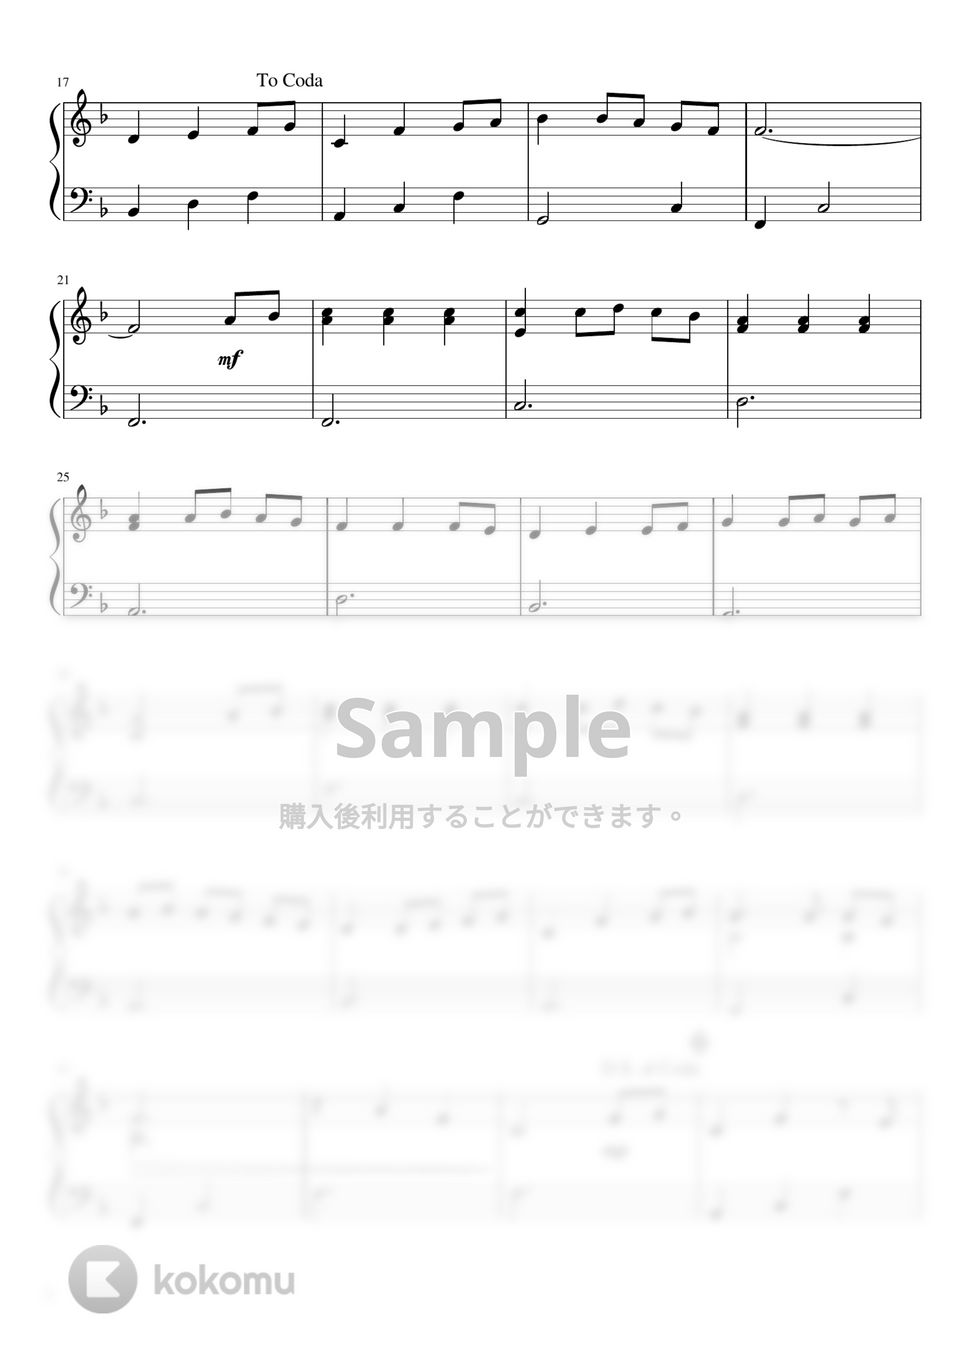 久石譲 - いつも何度でも (ピアノ初級 / ソロ) by pianon